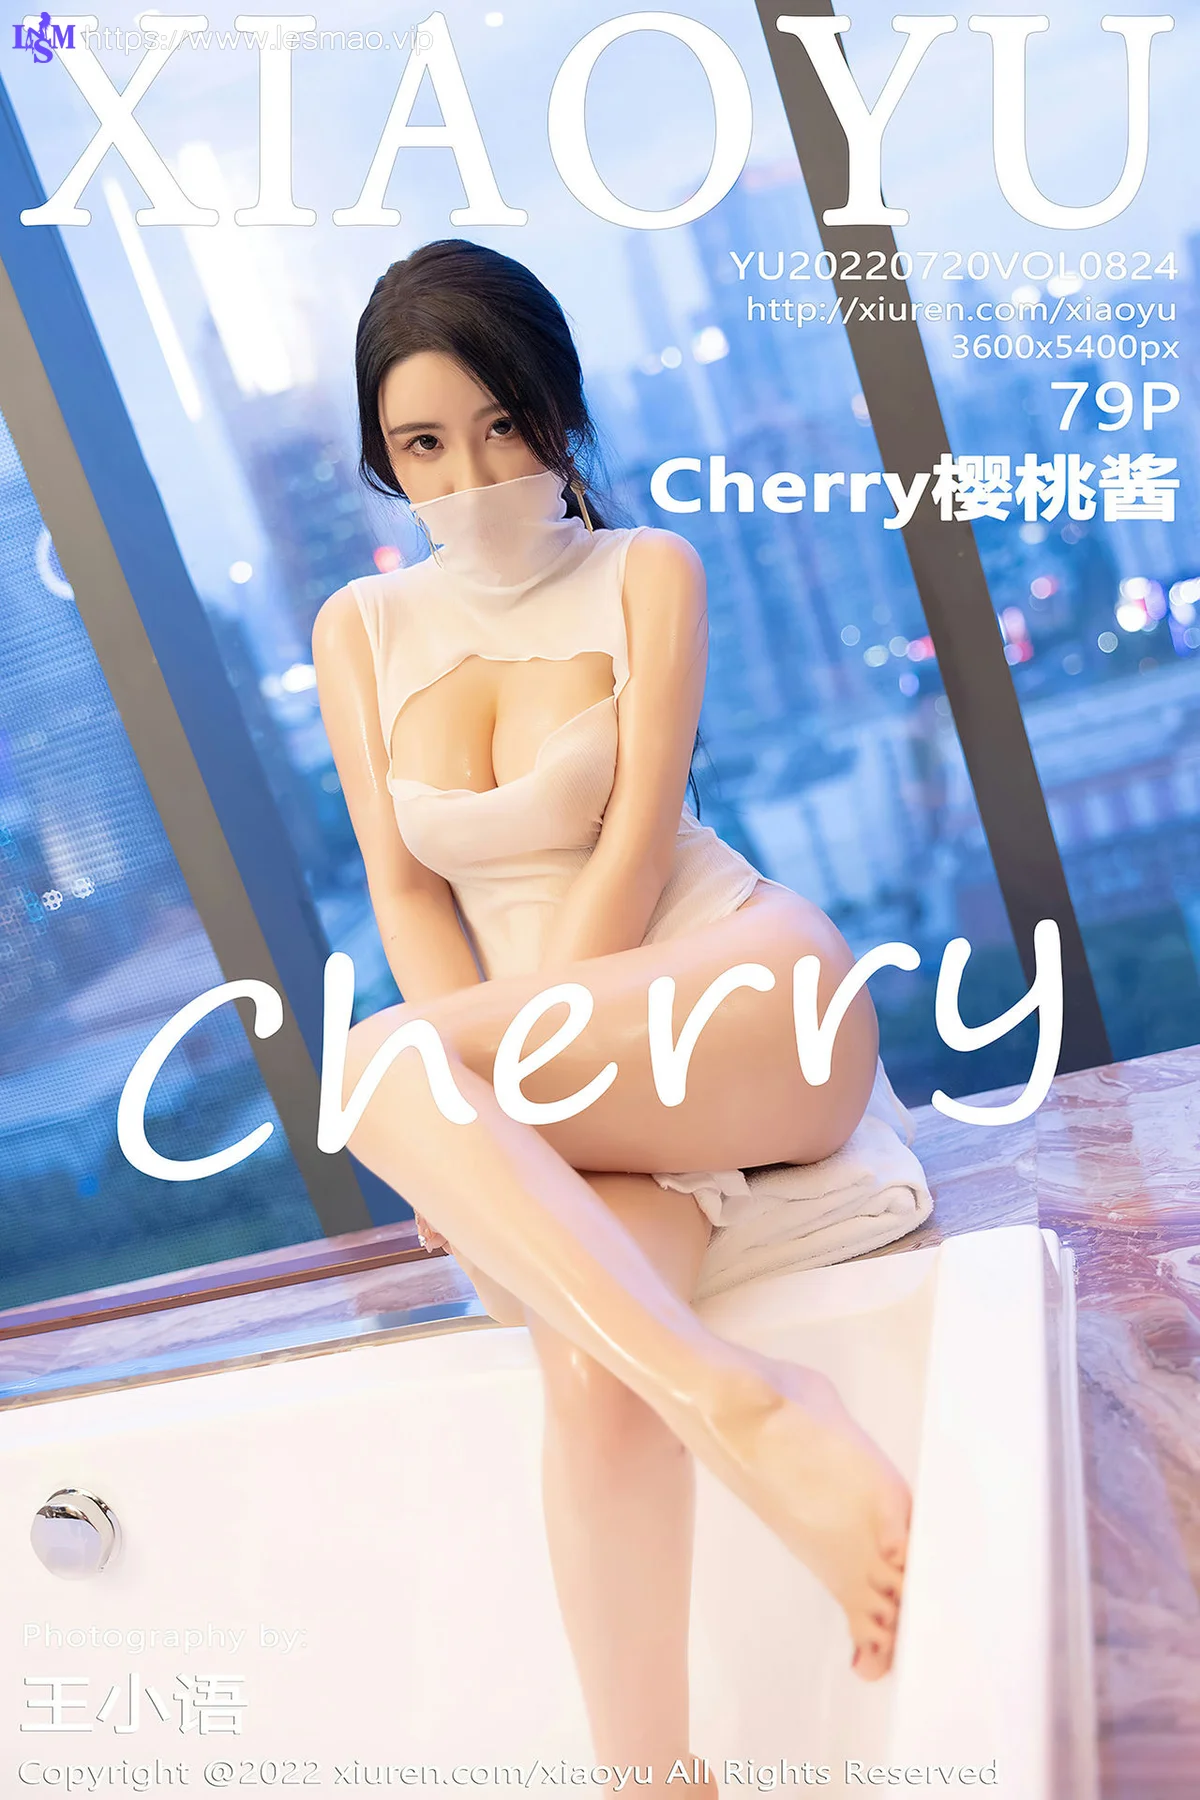 XIAOYU  语画界 Vol.824 浴缸场景拍摄 Cherry樱桃酱 性感拍写真1 - 4